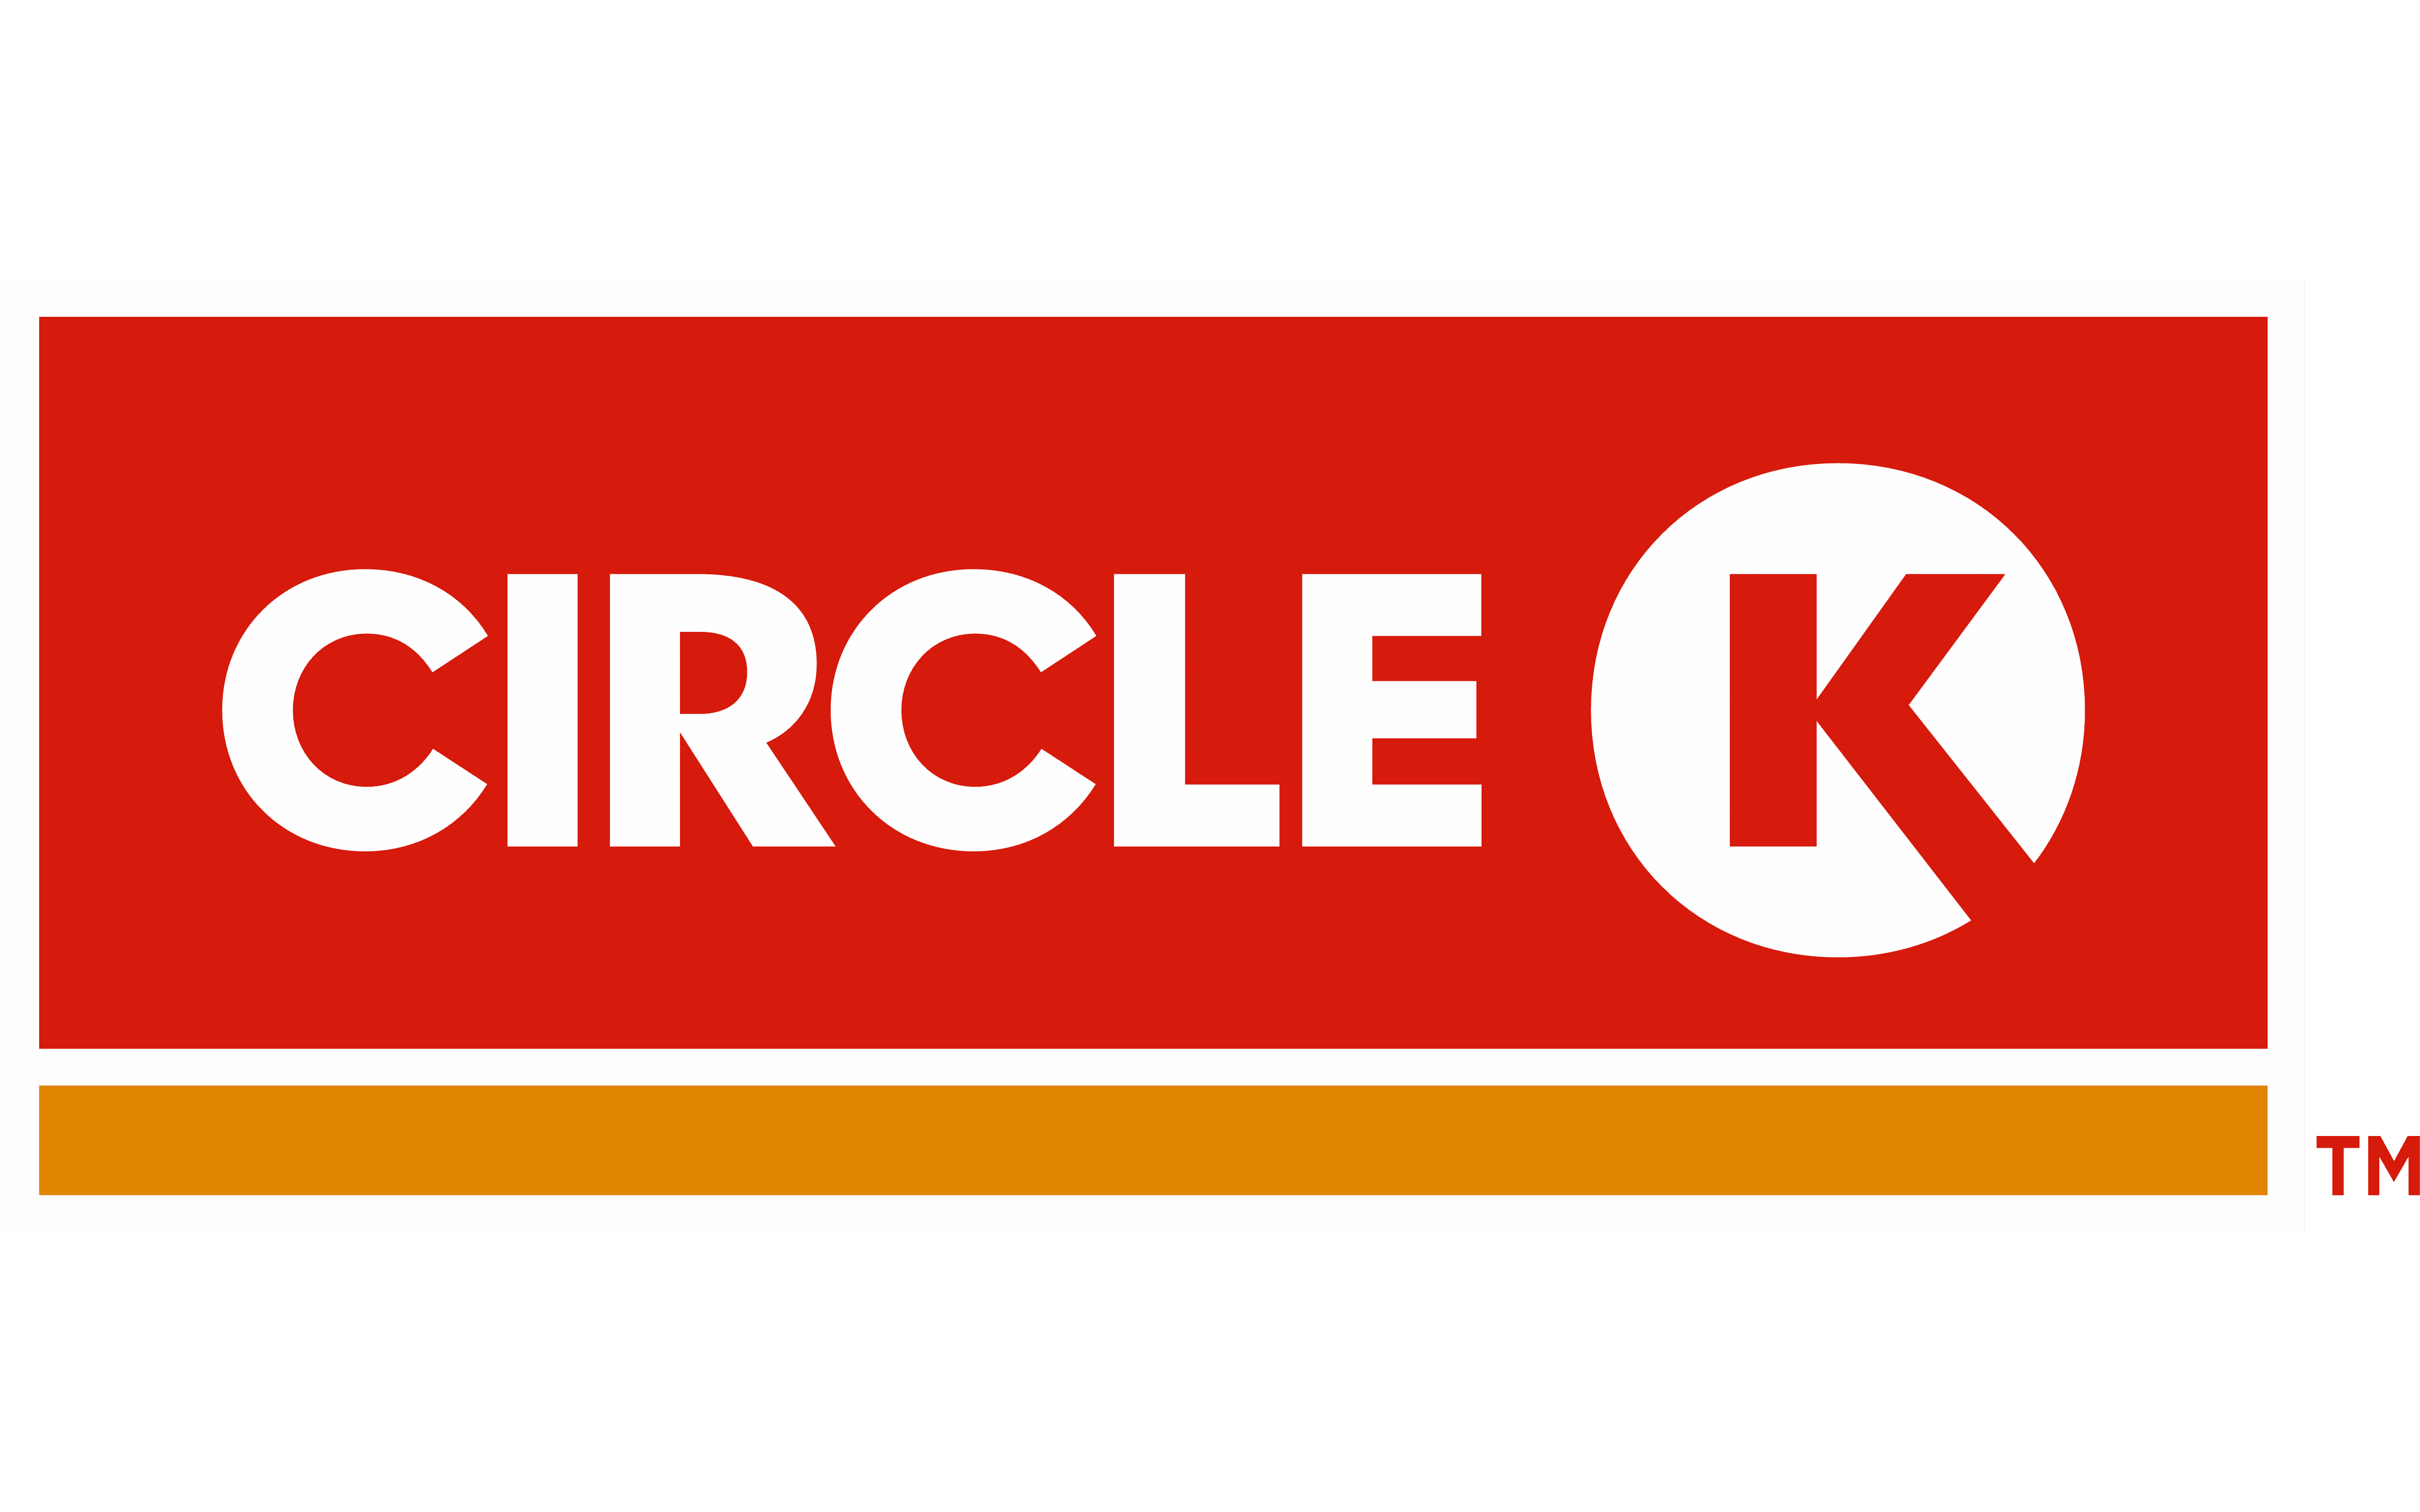 Circle-K-Logo-1